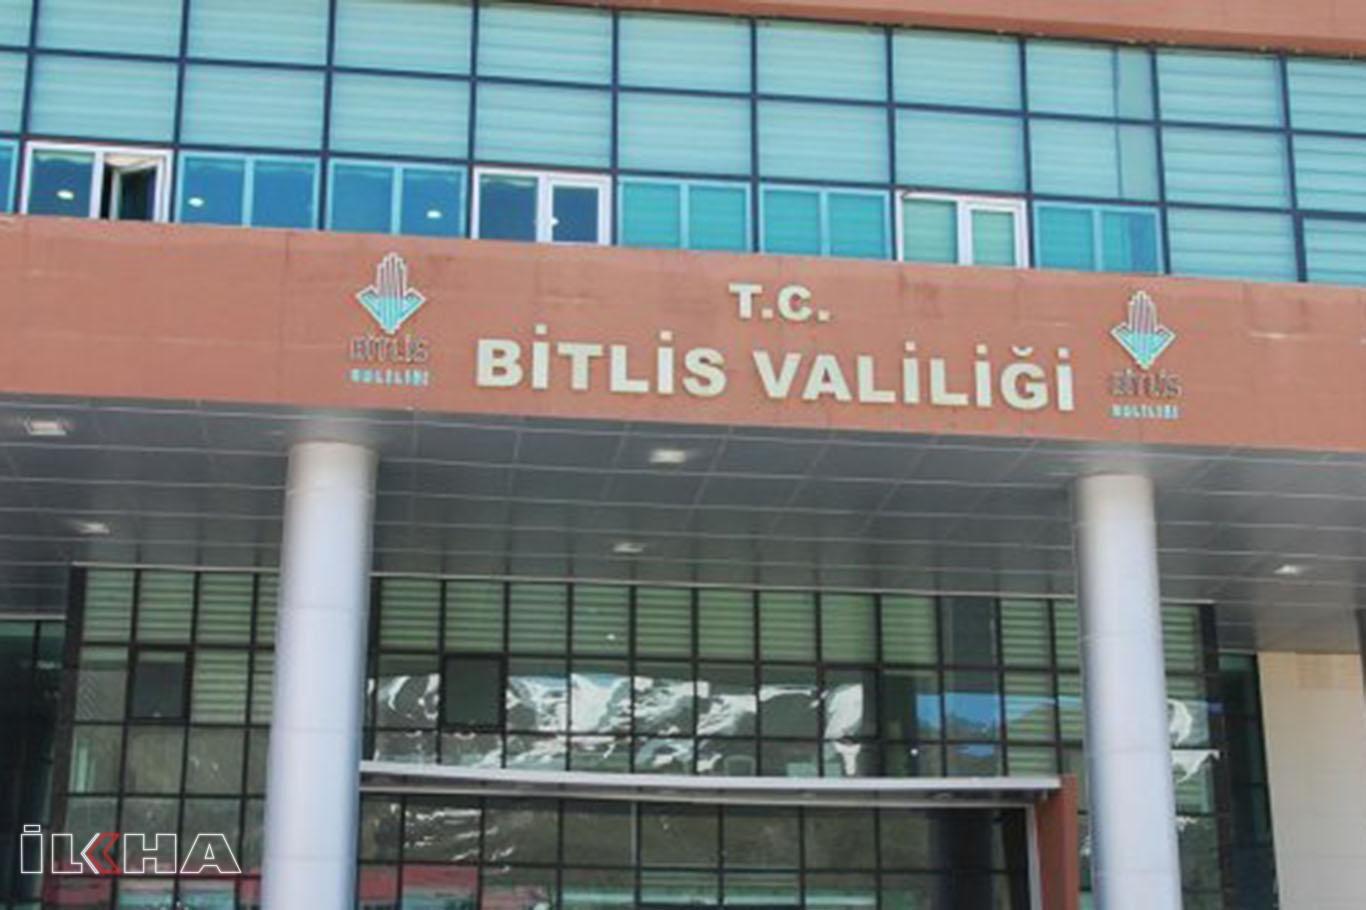 Bitlis Valiliği Corona virüs salgınına karşı alınan tedbirleri kamuoyuyla paylaştı